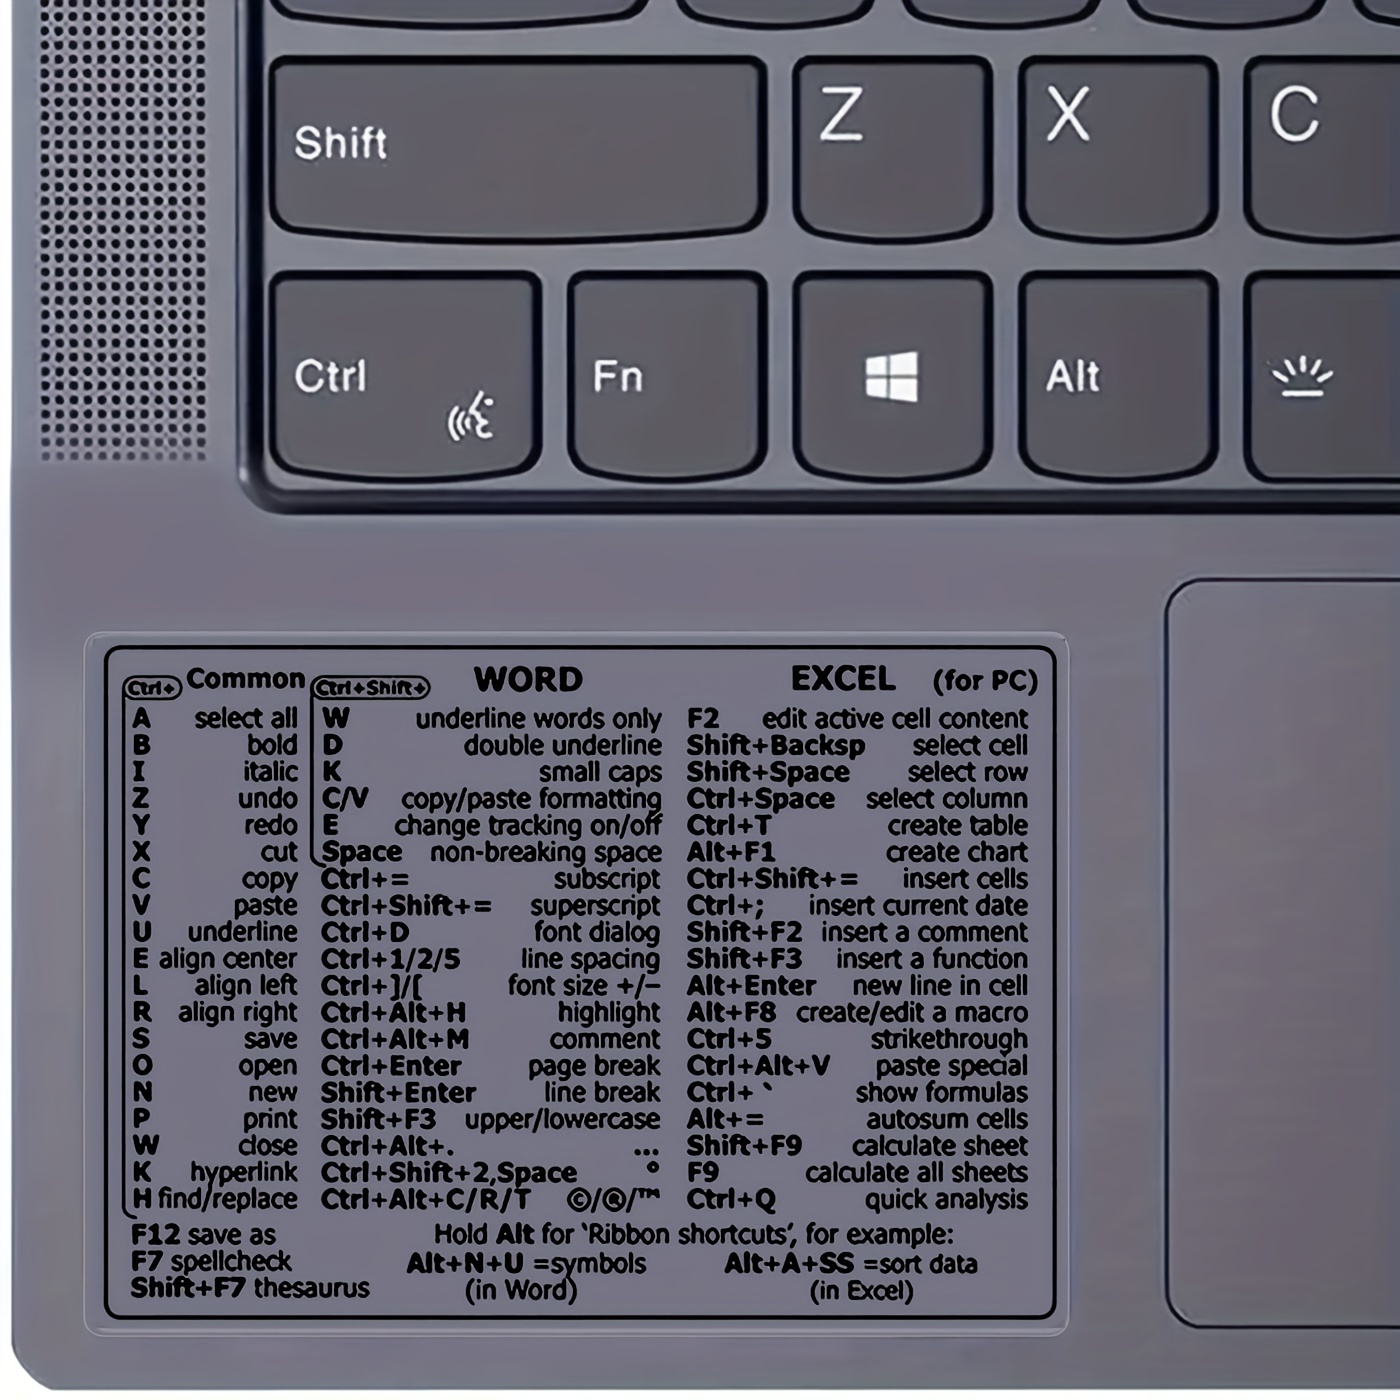 Autocollant adhésif amovible pour clavier de référence PC Windows, raccourci  d'ordinateur, pour Guide de clavier de référence rapide